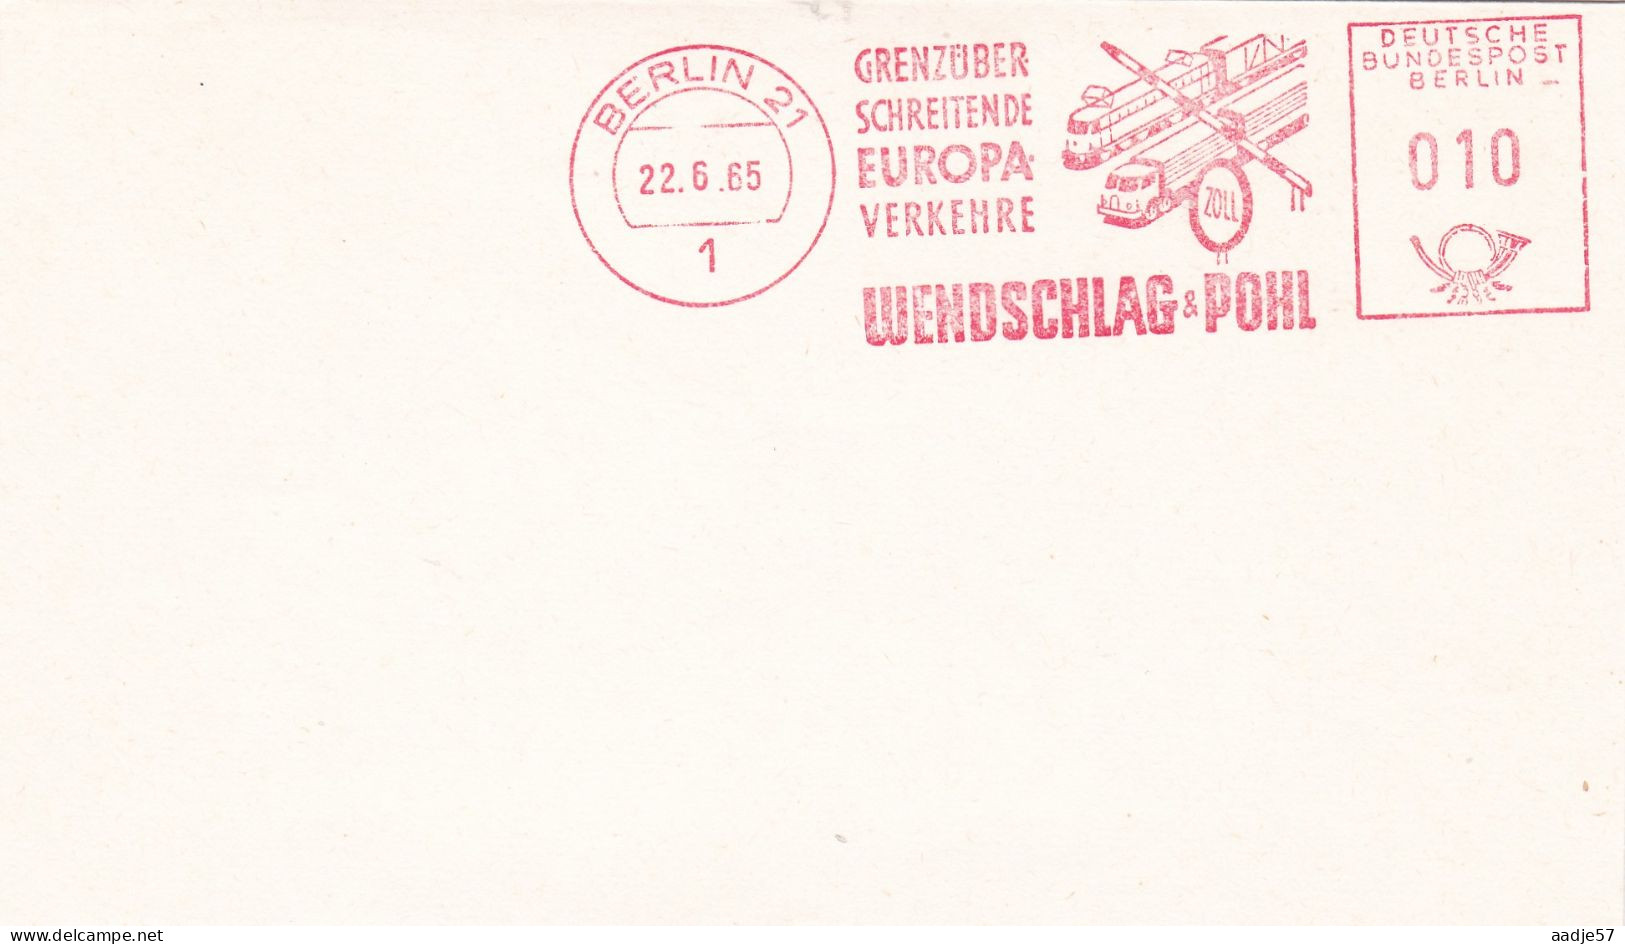 Germany Berlin Metercut Flag Grenüber Schreitende Europa Verkehre 1965 - Trains